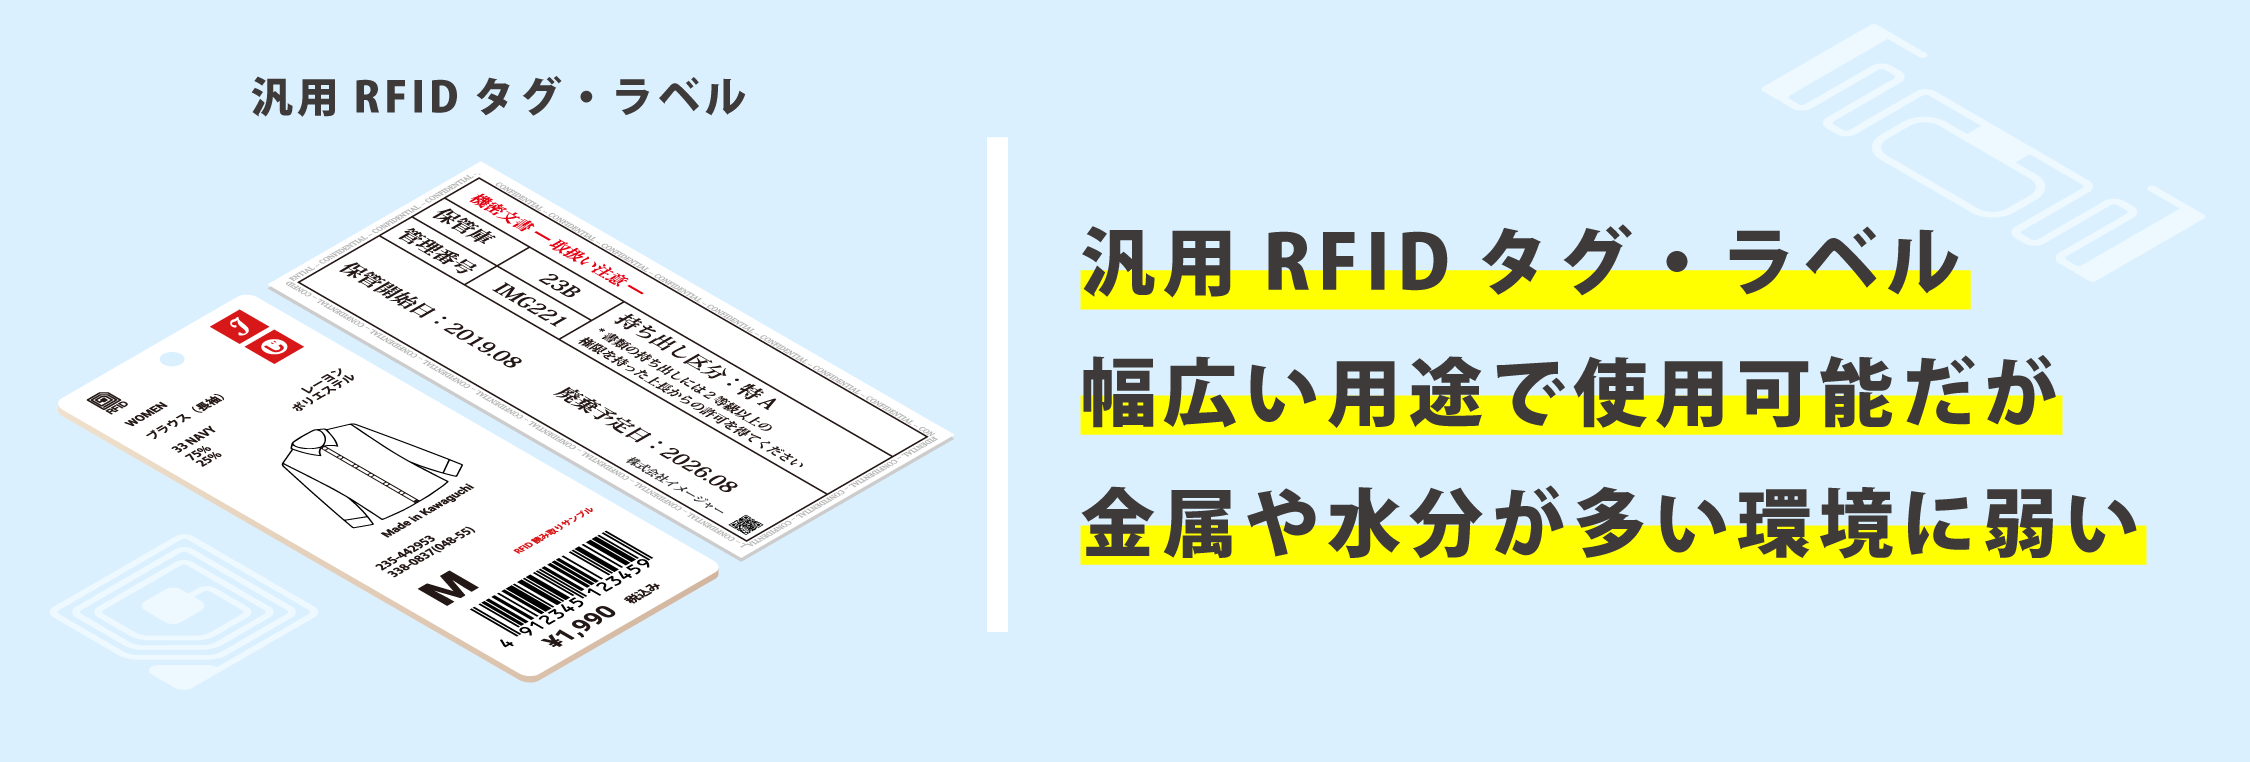 RFID_tag